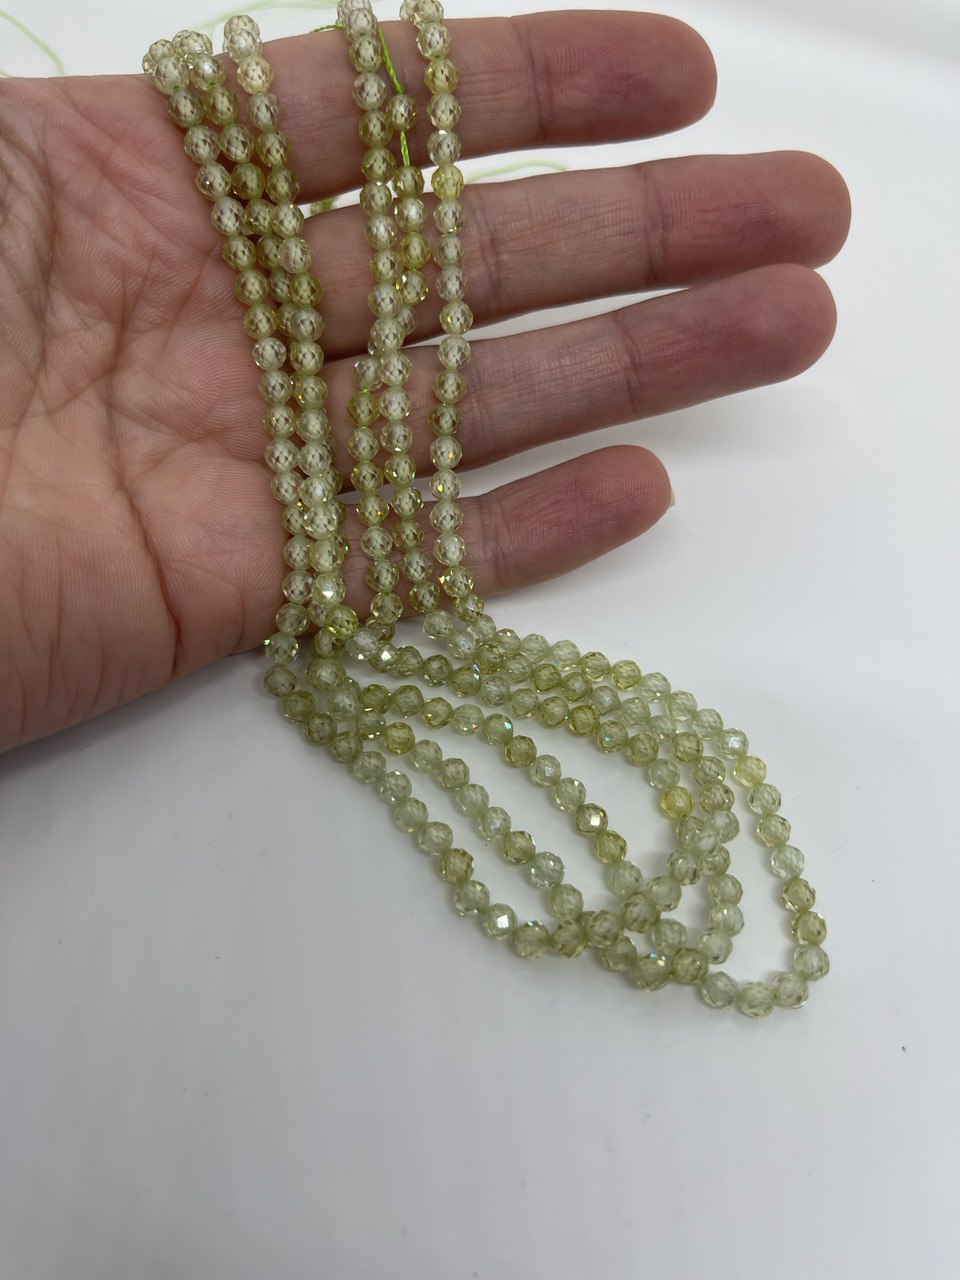 Бусины Циркон натуральный ювелирной огранки размер 3мм цвет зеленый